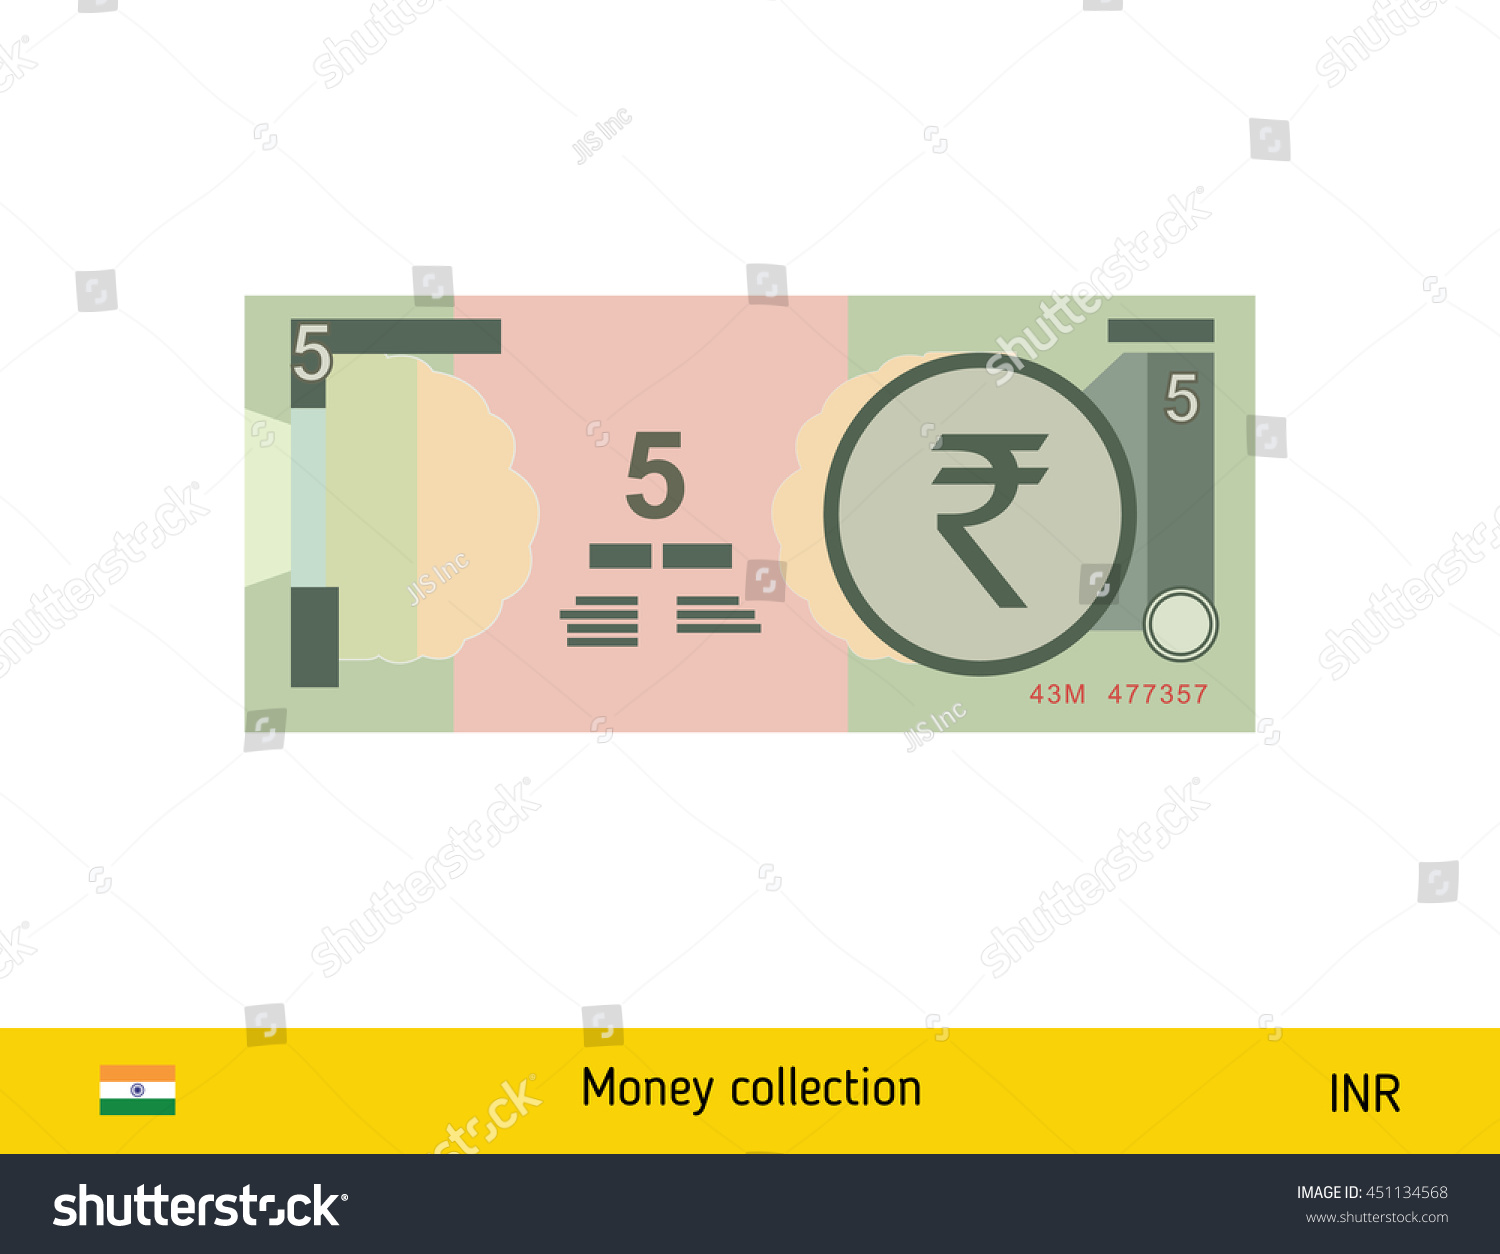 SVG of 5 rupee banknote illustration. svg